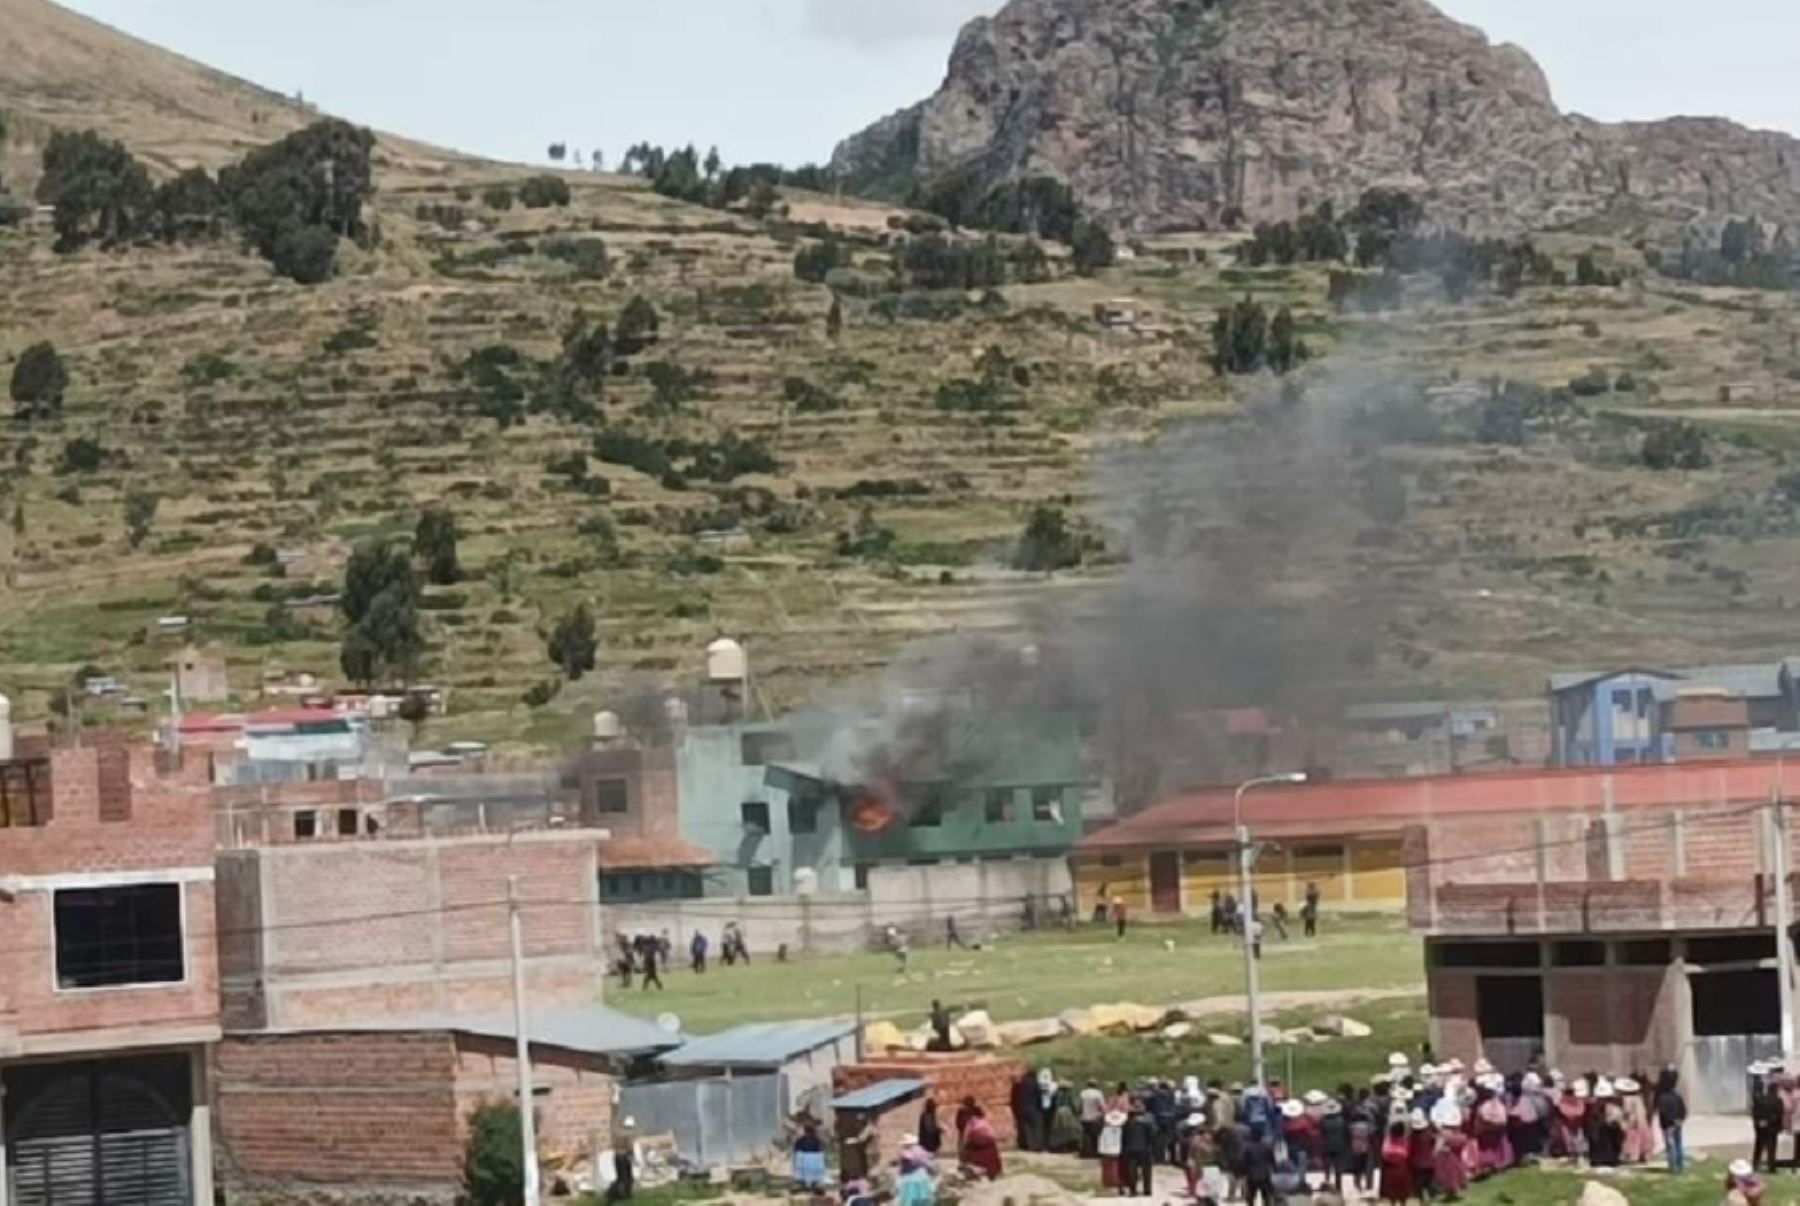 Un grupo de vándalos atacó e incendió hoy las instalaciones de la comisaria de la ciudad de Juli, capital de la provincia de Chucuito, en el departamento de Puno, en una jornada de protestas sociales que ha dejado hasta el momento cinco personas heridas.